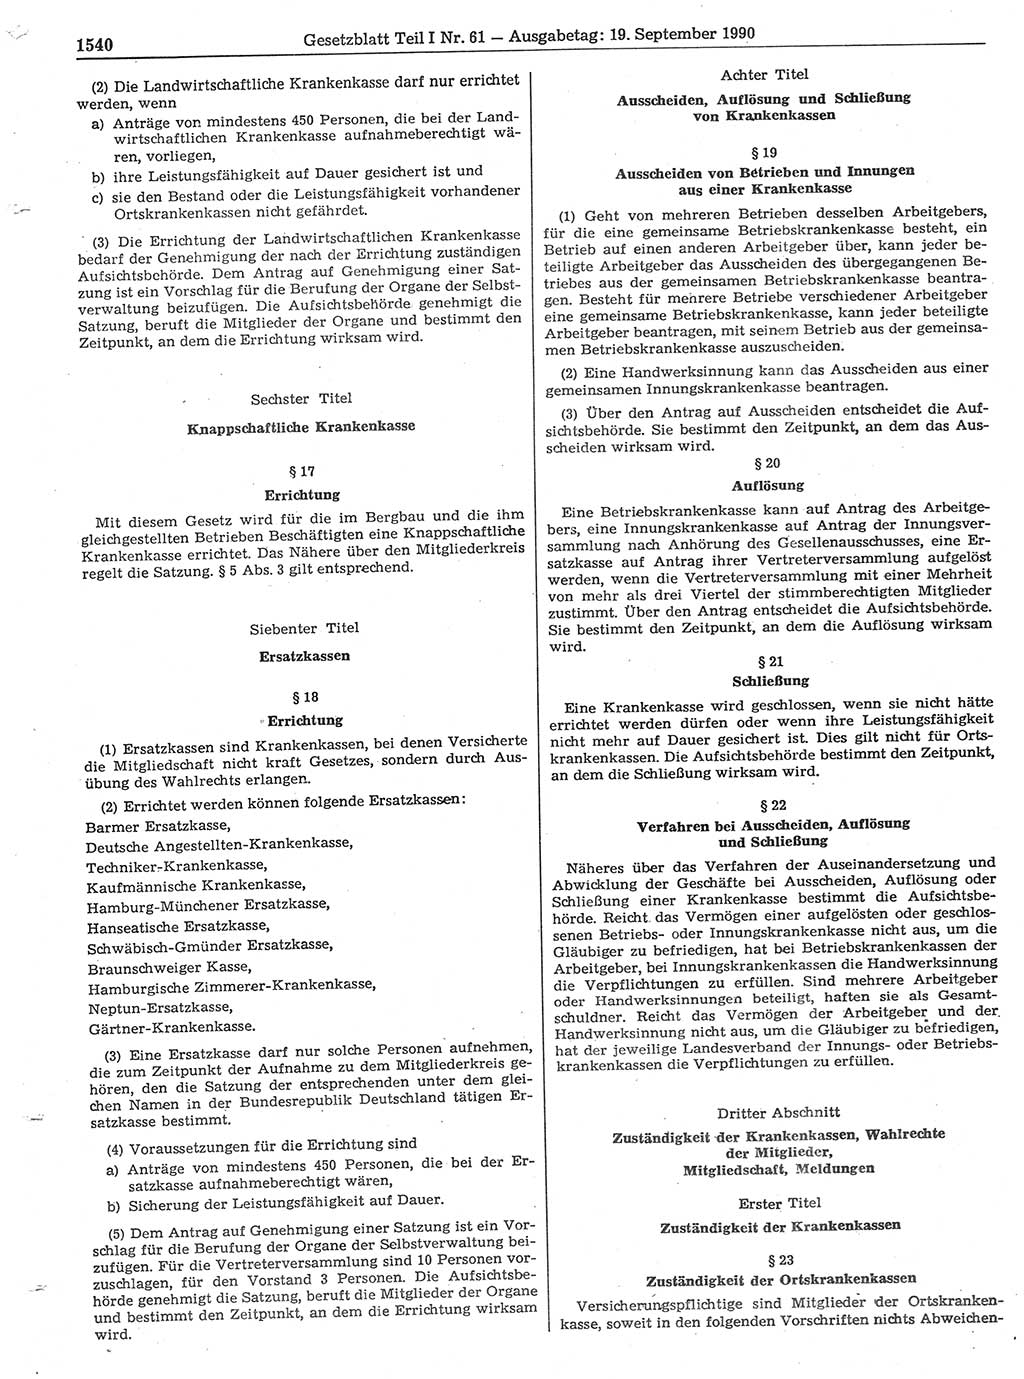 Gesetzblatt (GBl.) der Deutschen Demokratischen Republik (DDR) Teil Ⅰ 1990, Seite 1540 (GBl. DDR Ⅰ 1990, S. 1540)